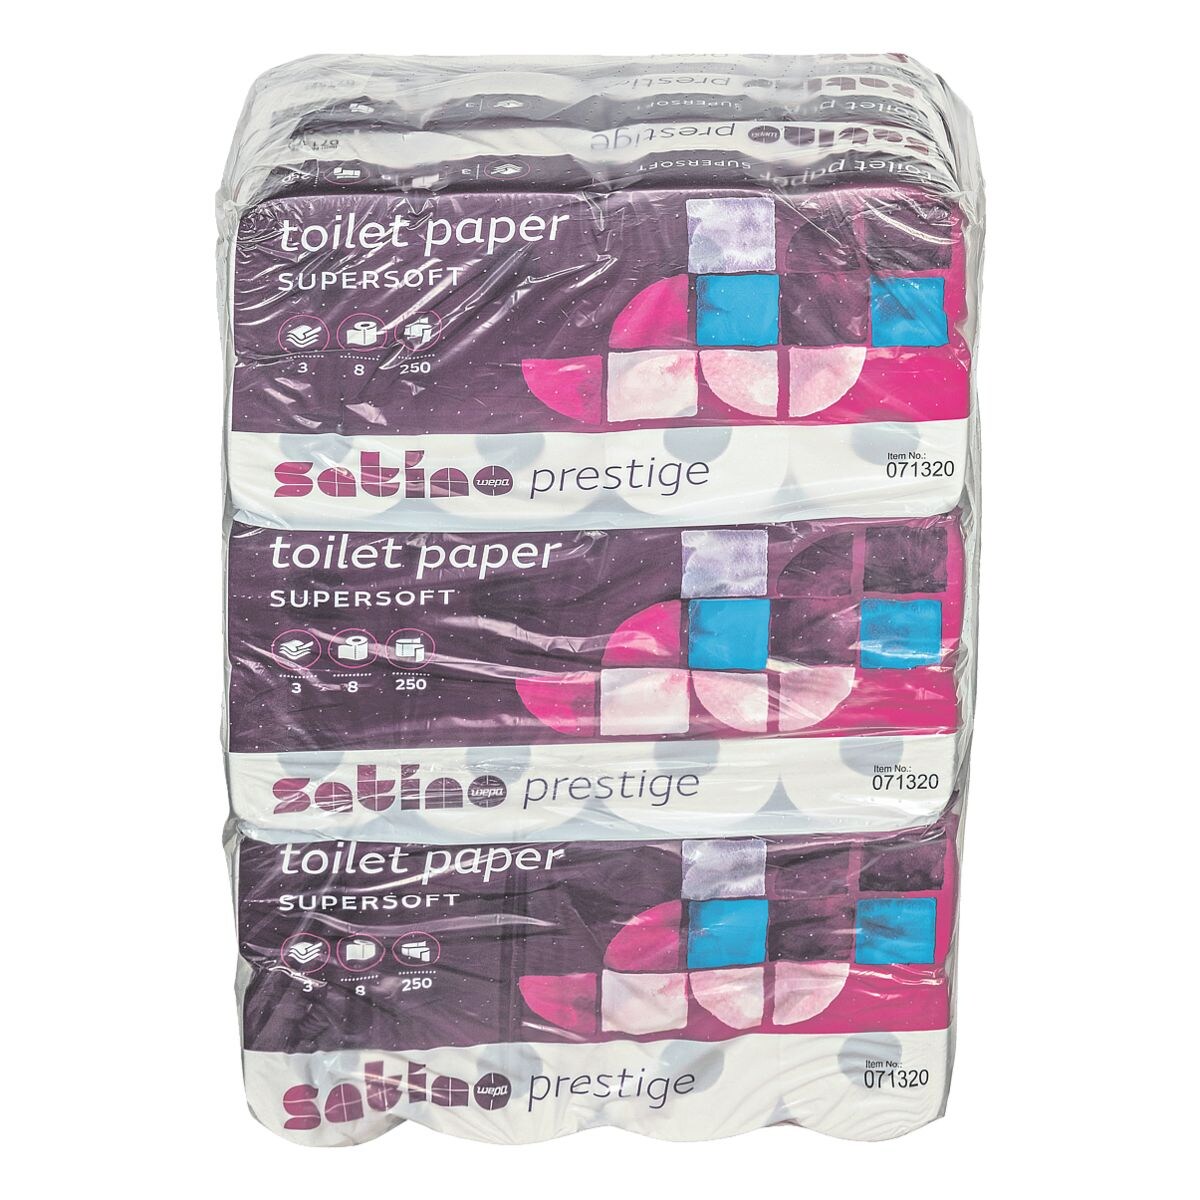 Satino prestige Toiletpapier Prestige 3-laags, extra wit - 72 rollen (9 pakken  8 rollen)